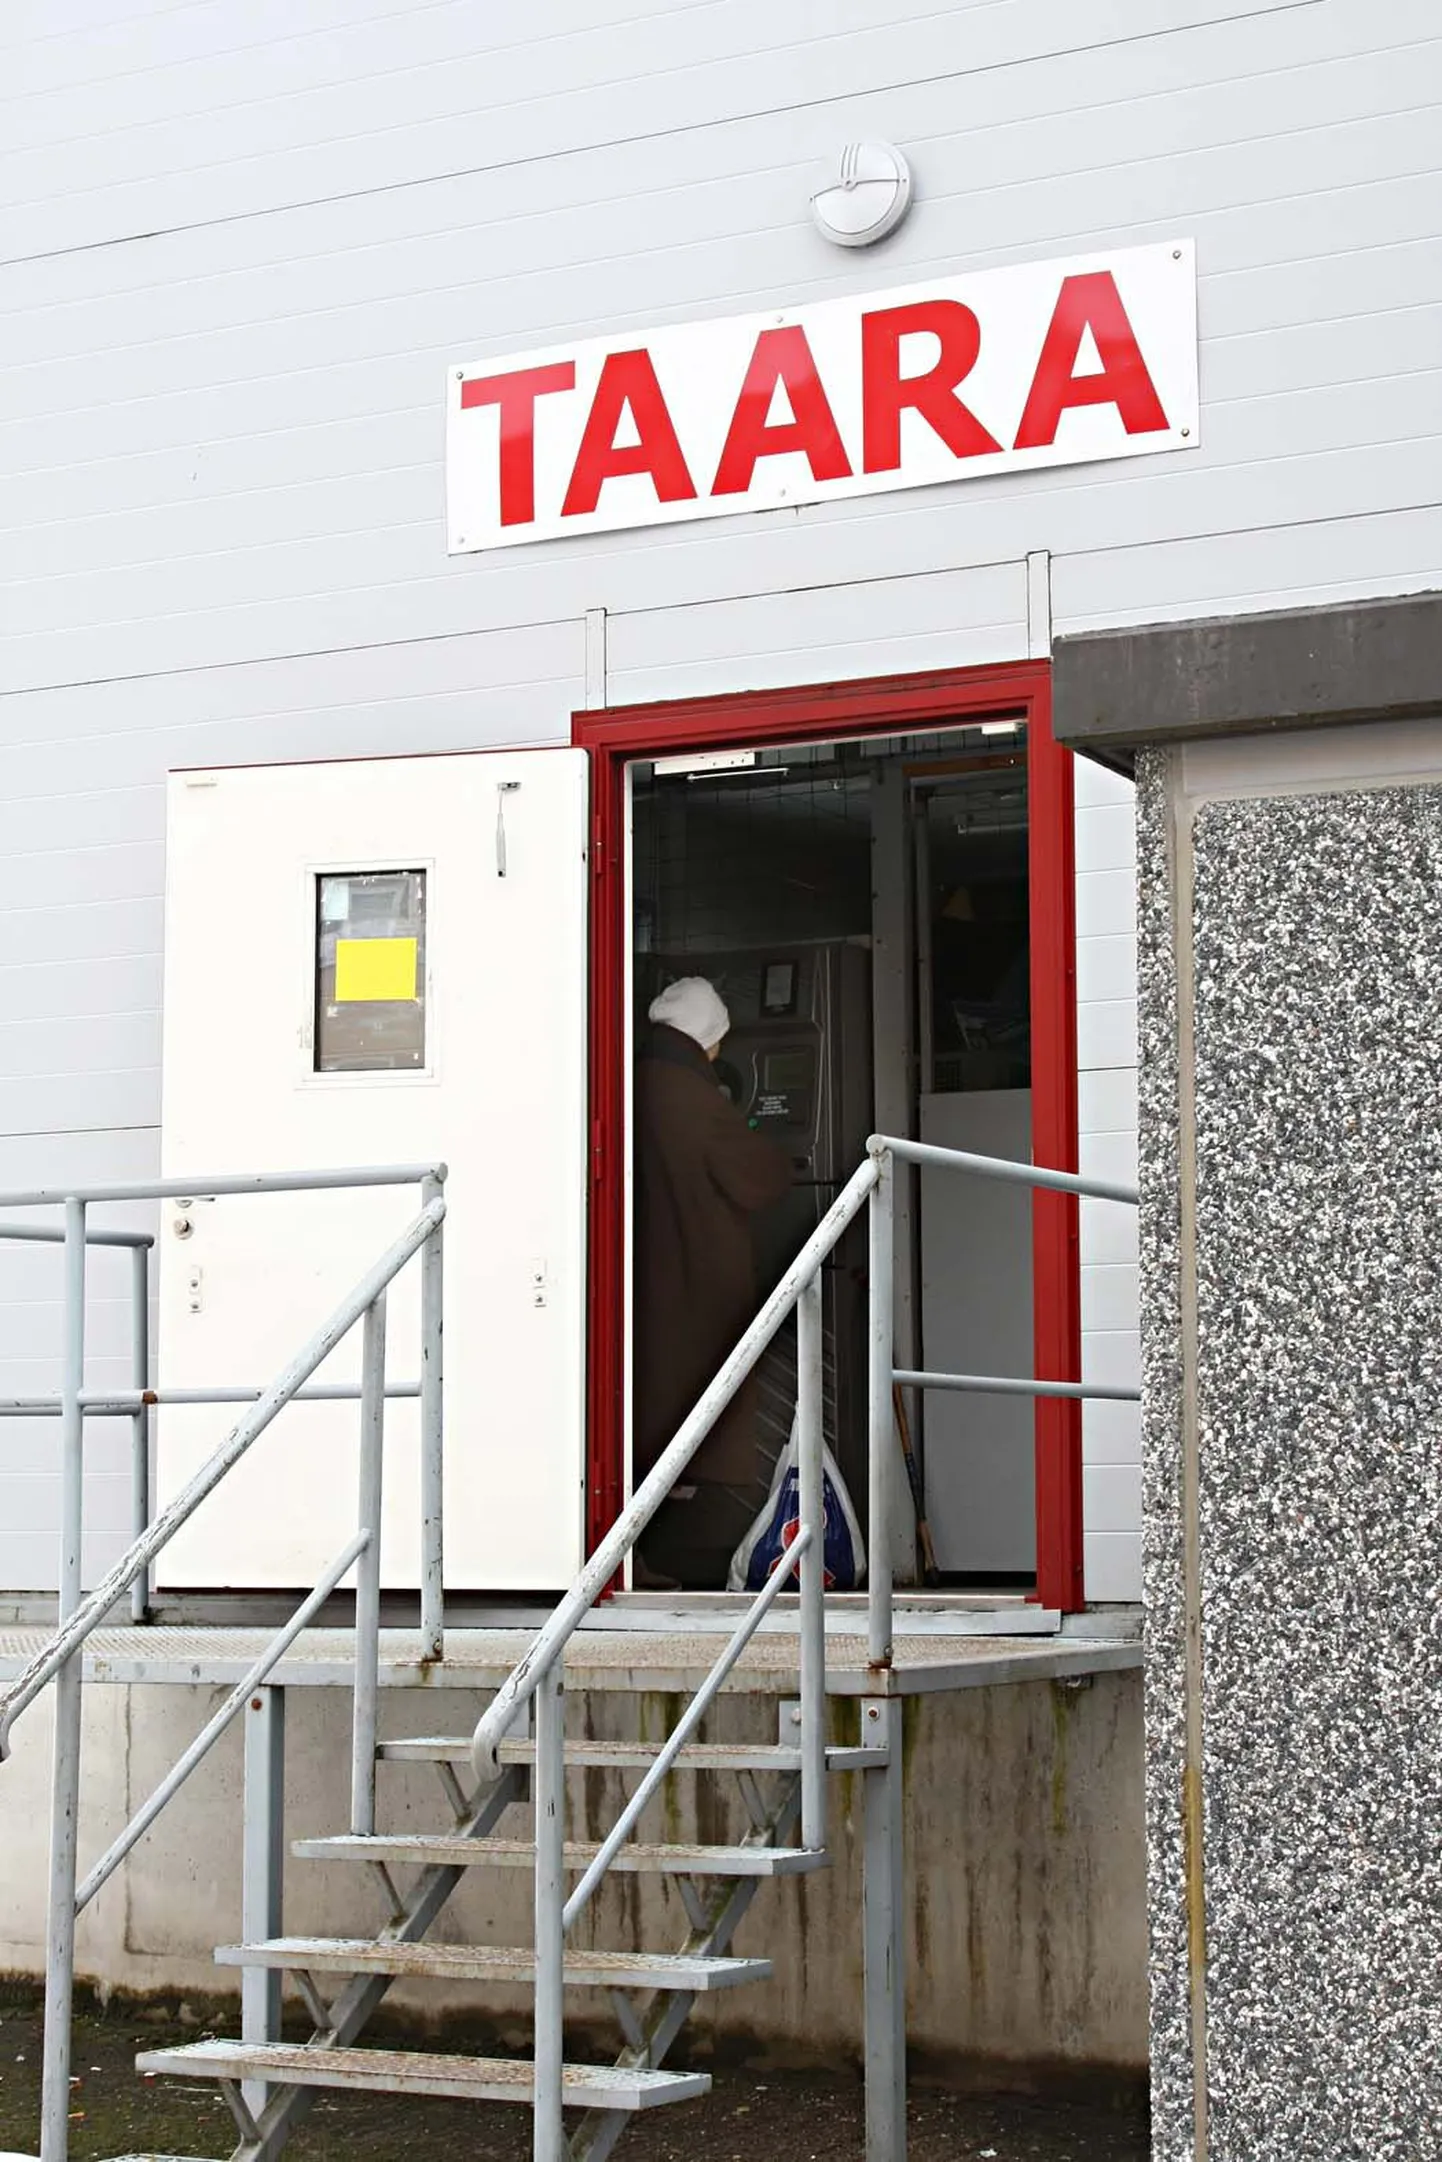 Läti ettevõtjad toovad suurtes kogustes pandipakendeid Valga taaraautomaatidesse.